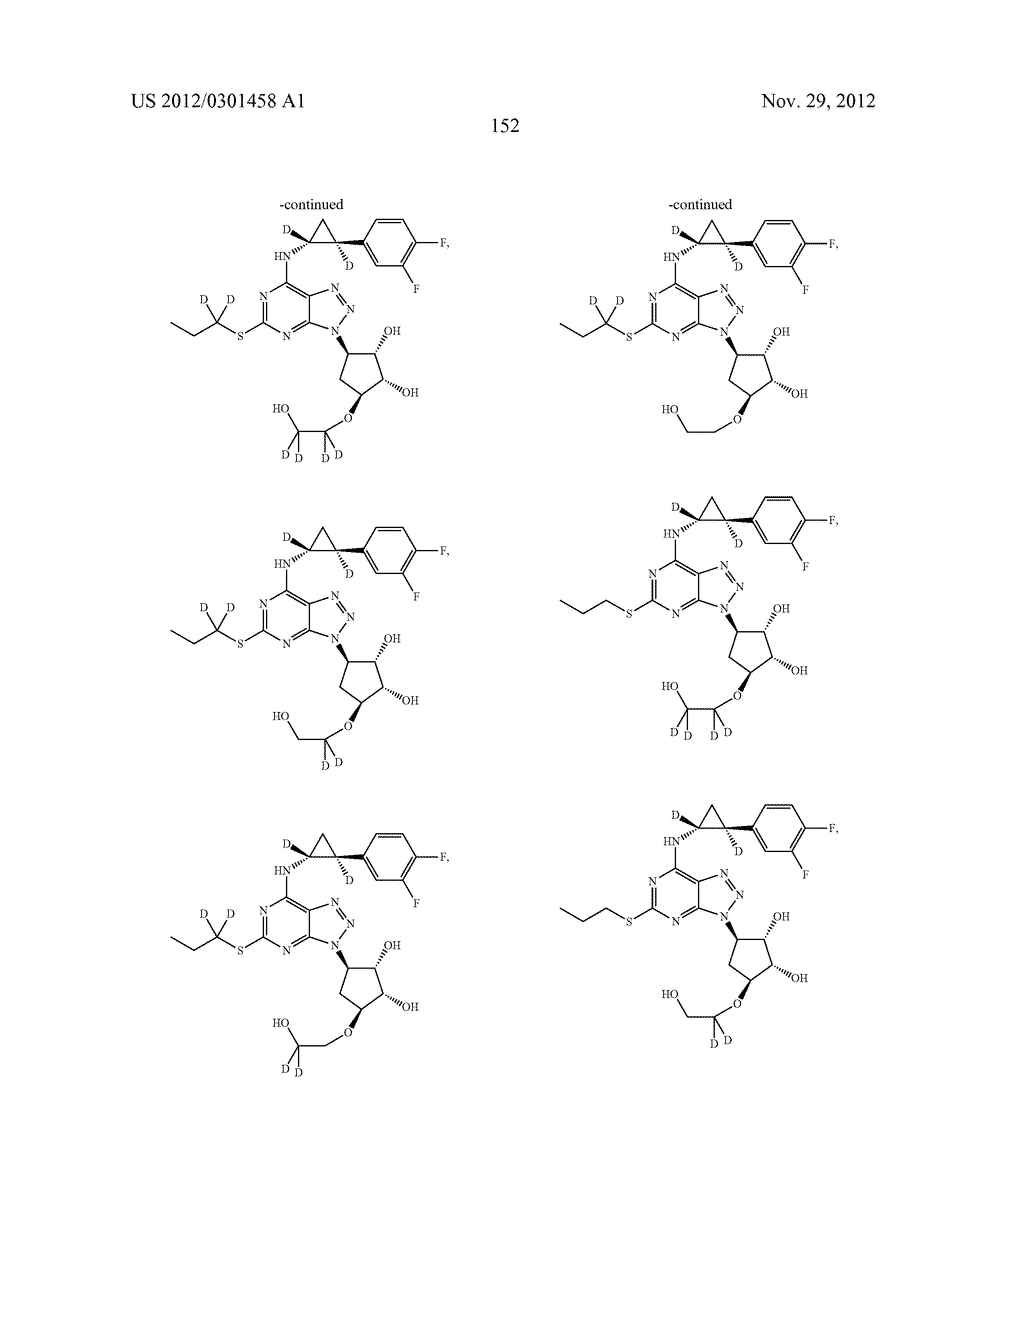 CYCLOPROPYL MODULATORS OF P2Y12 RECEPTOR - diagram, schematic, and image 153